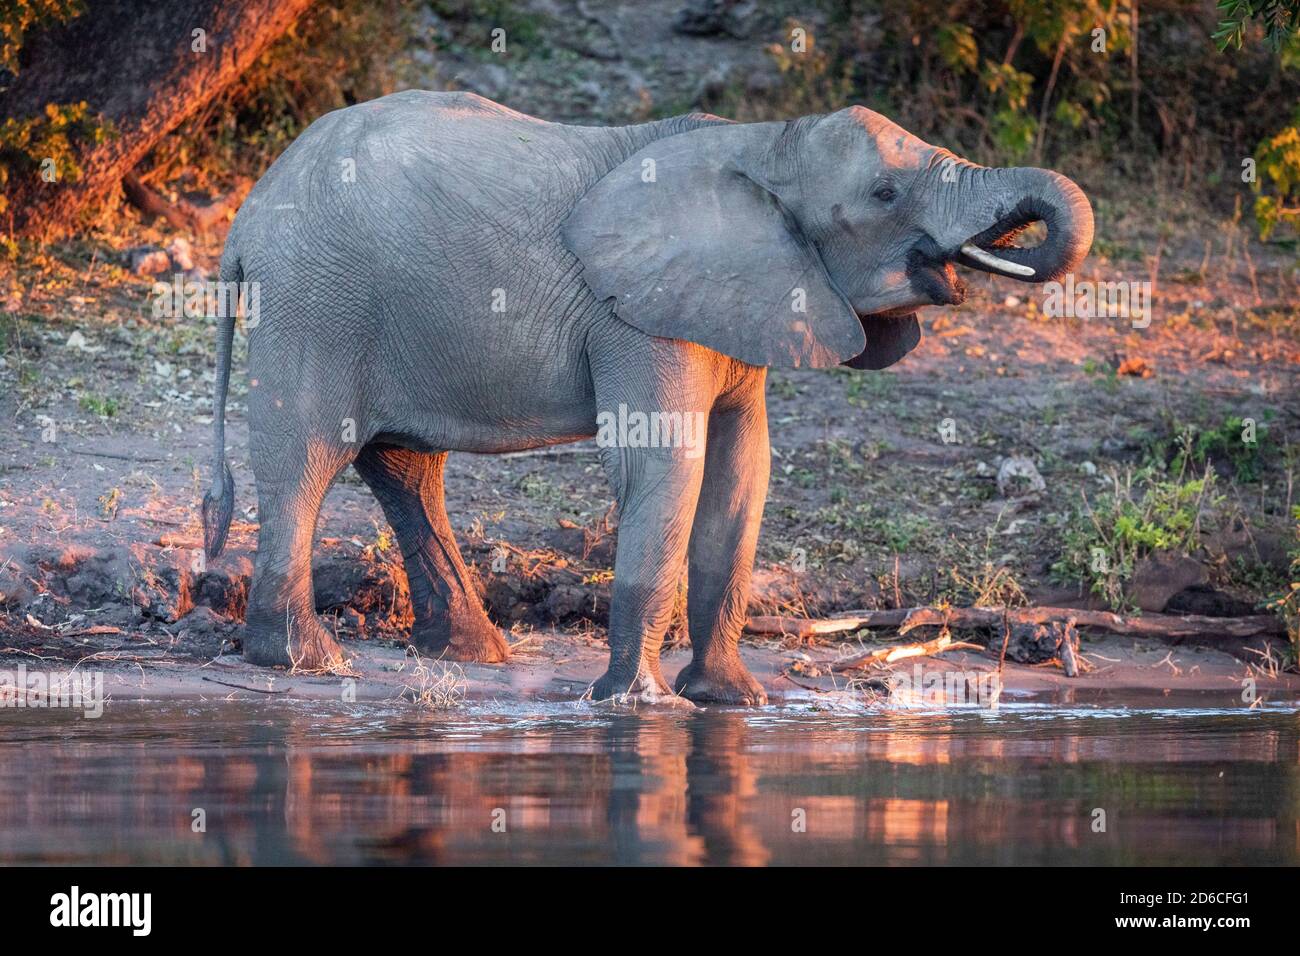 Femelle éléphant debout et de l'eau potable dans la lumière du soleil orange dedans En fin d'après-midi à la rivière Chobe au Botswana Banque D'Images